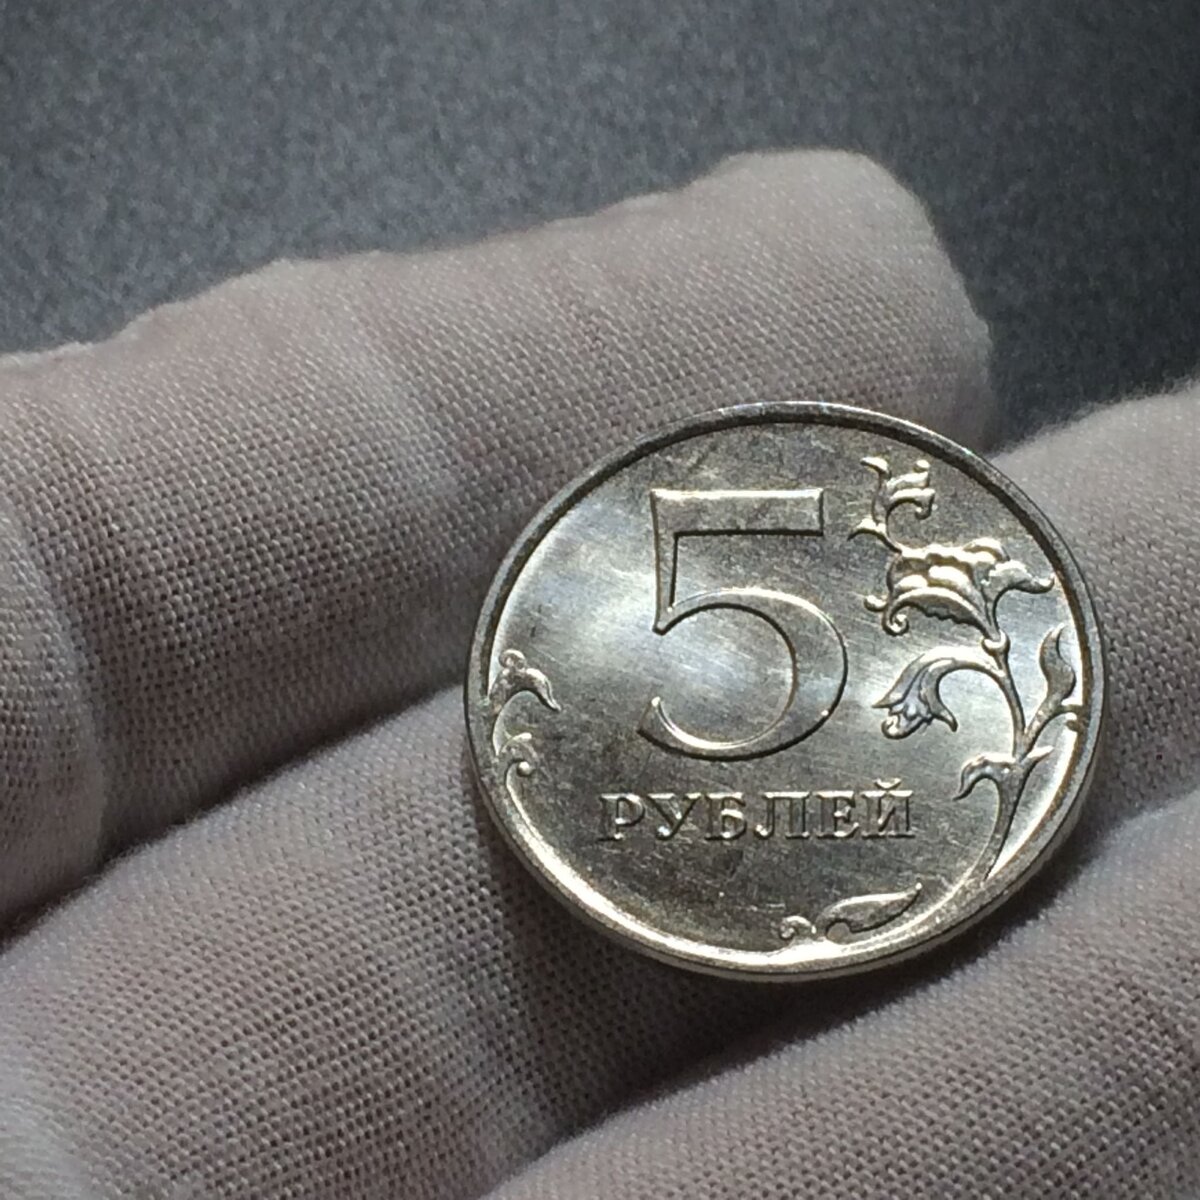 Рубль пять 20 часть. 5 Рублей 1998 года СПМД штемпель 2.4. Бракованные монеты 5 рублей 1998 года. Монеты с браком. Бракованные монеты 5 рублей.